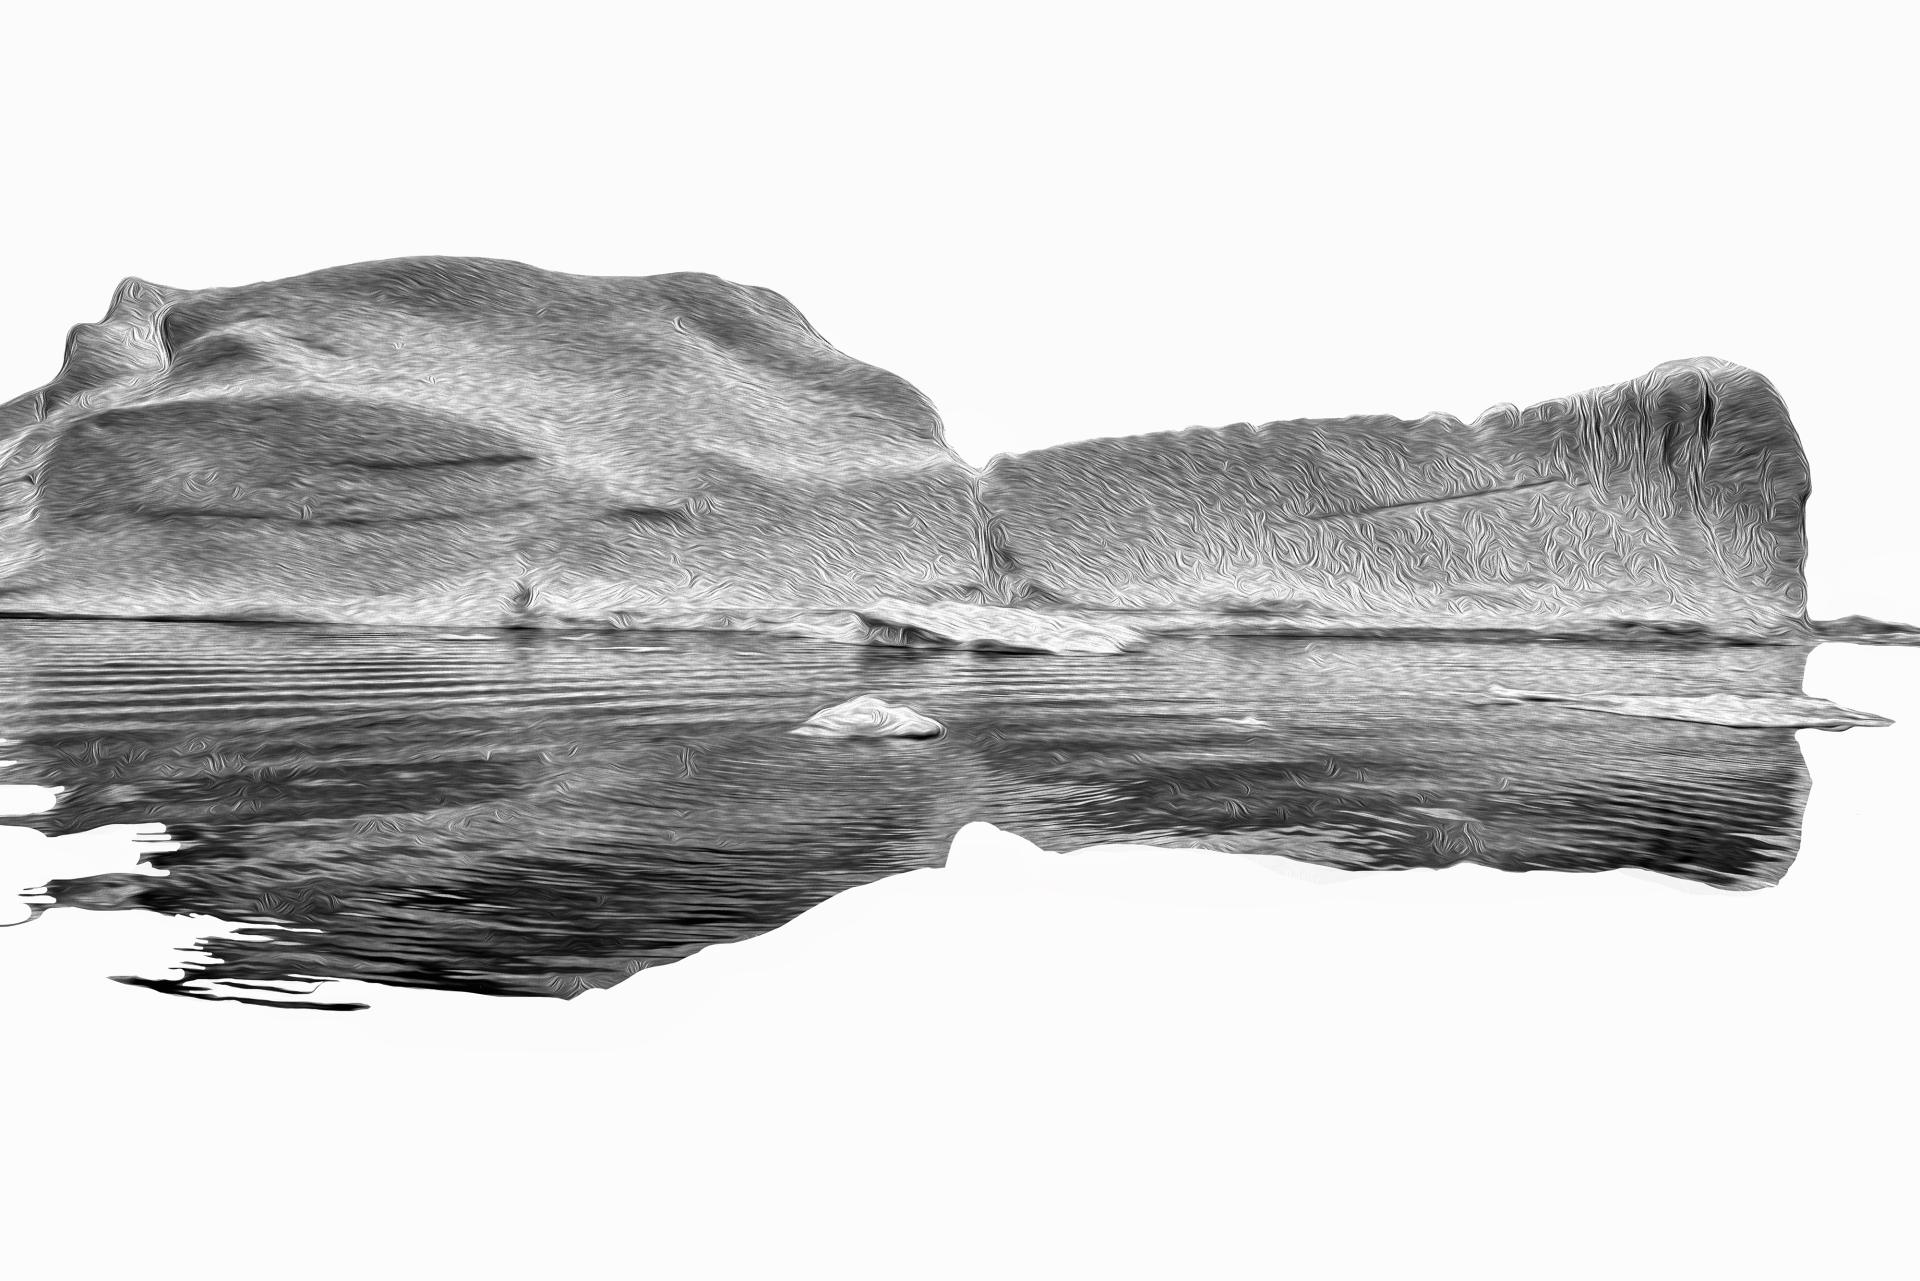 London Photography Awards Winner - The Art of Iceberg